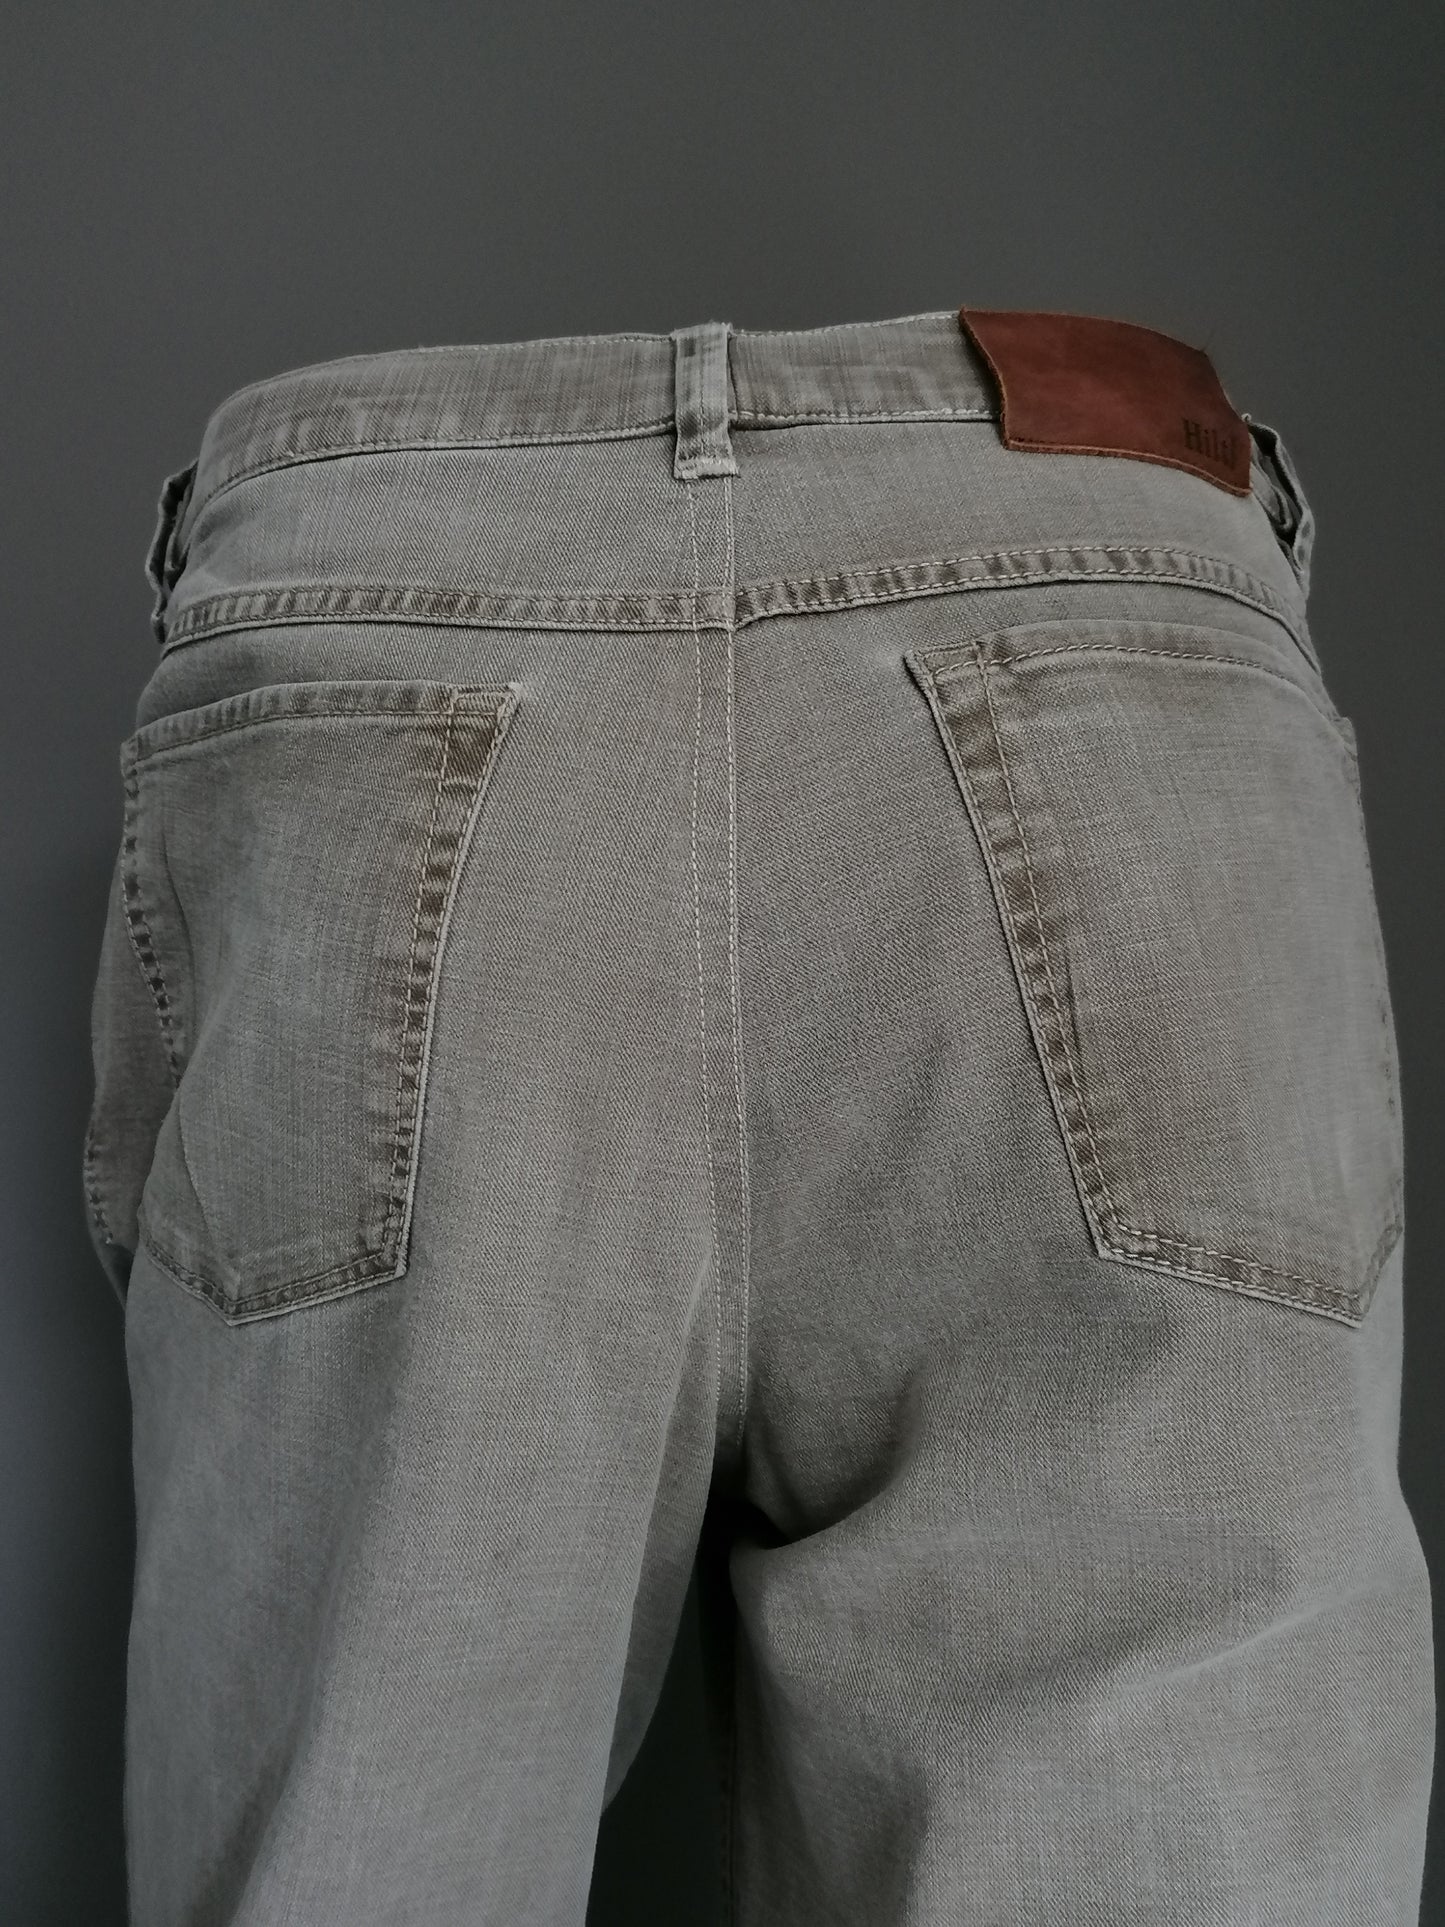 Pantaloni Hiltl. Motivo marrone chiaro. Dimensioni 54 / L. Tipo ZE500. Stirata.